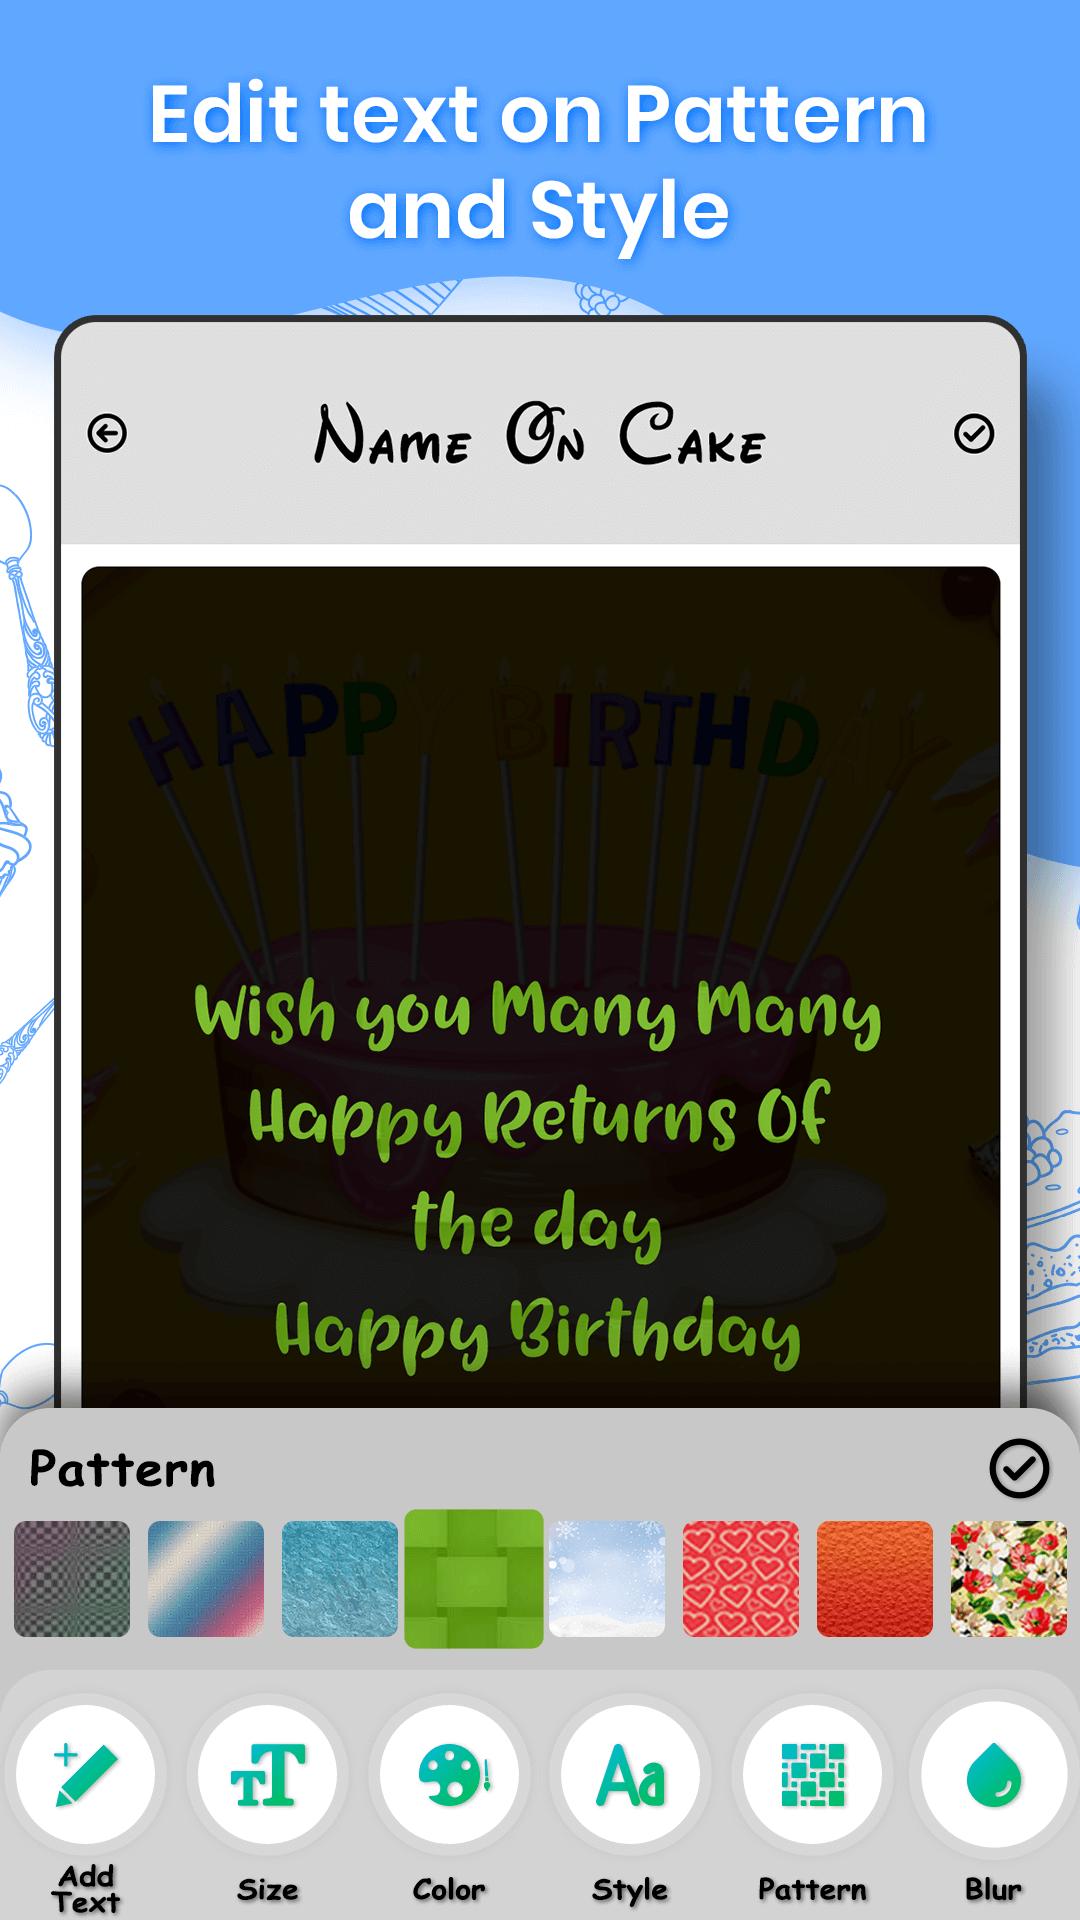 Name and photo on cake 1.0.1 Screenshot 5